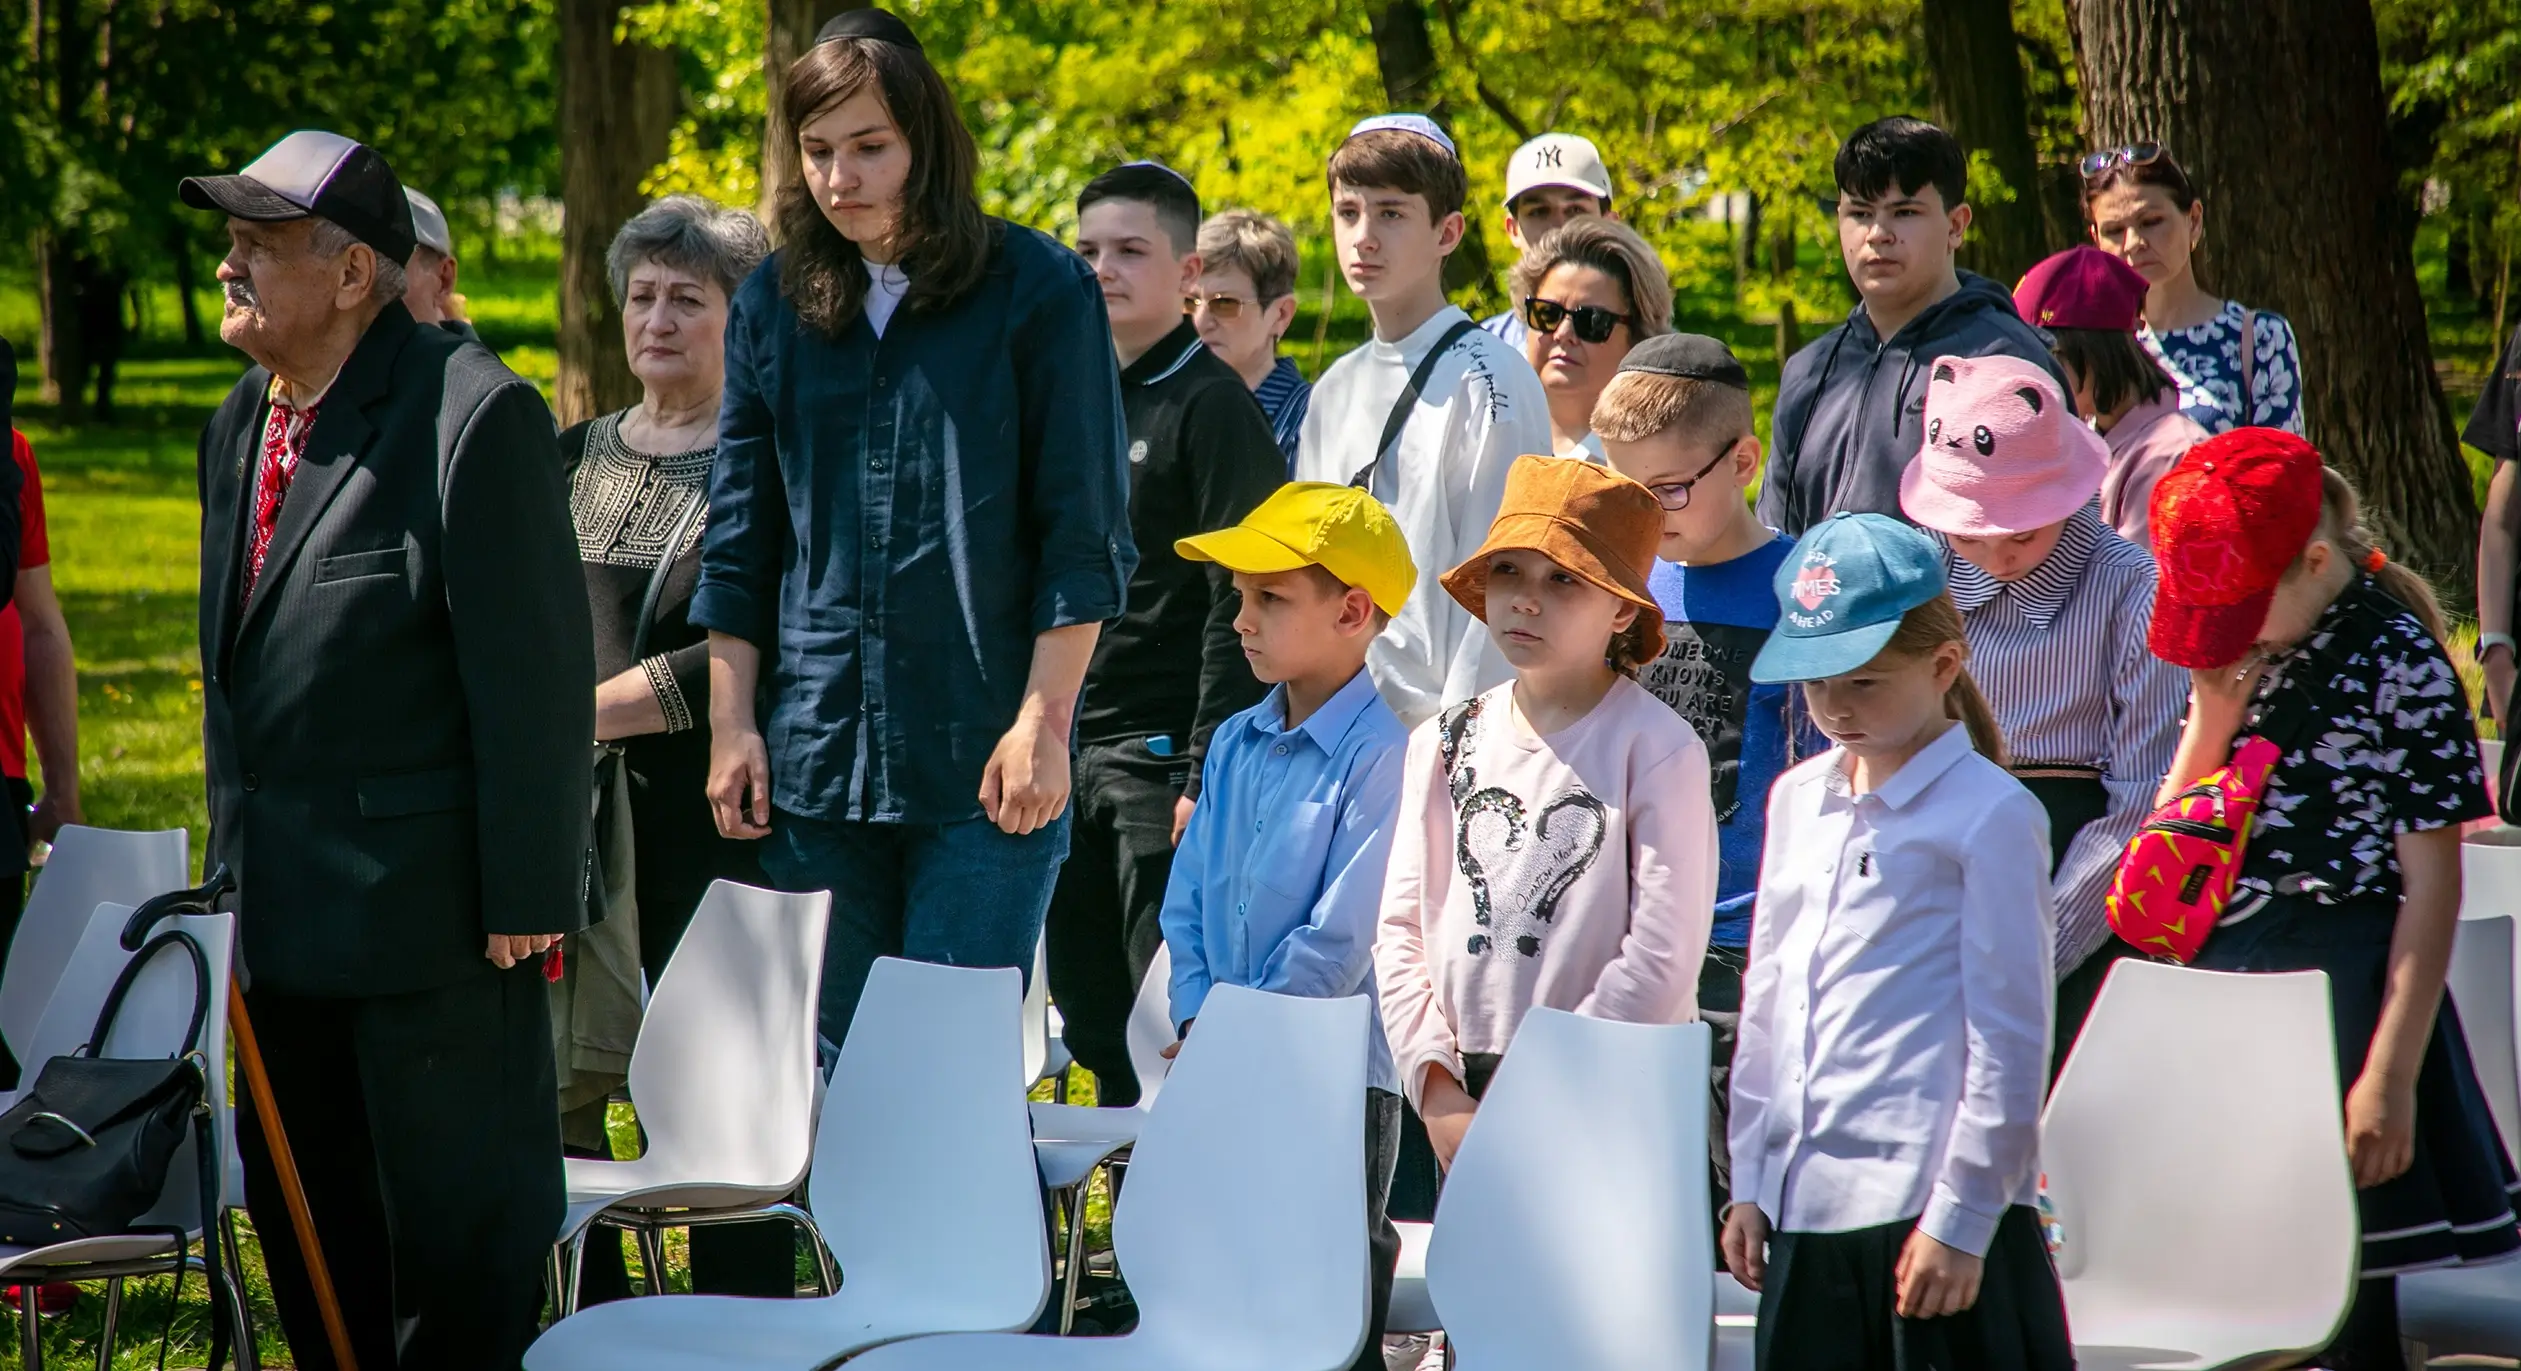 День пам’яті українців, які рятували євреїв під час Другої світової війни